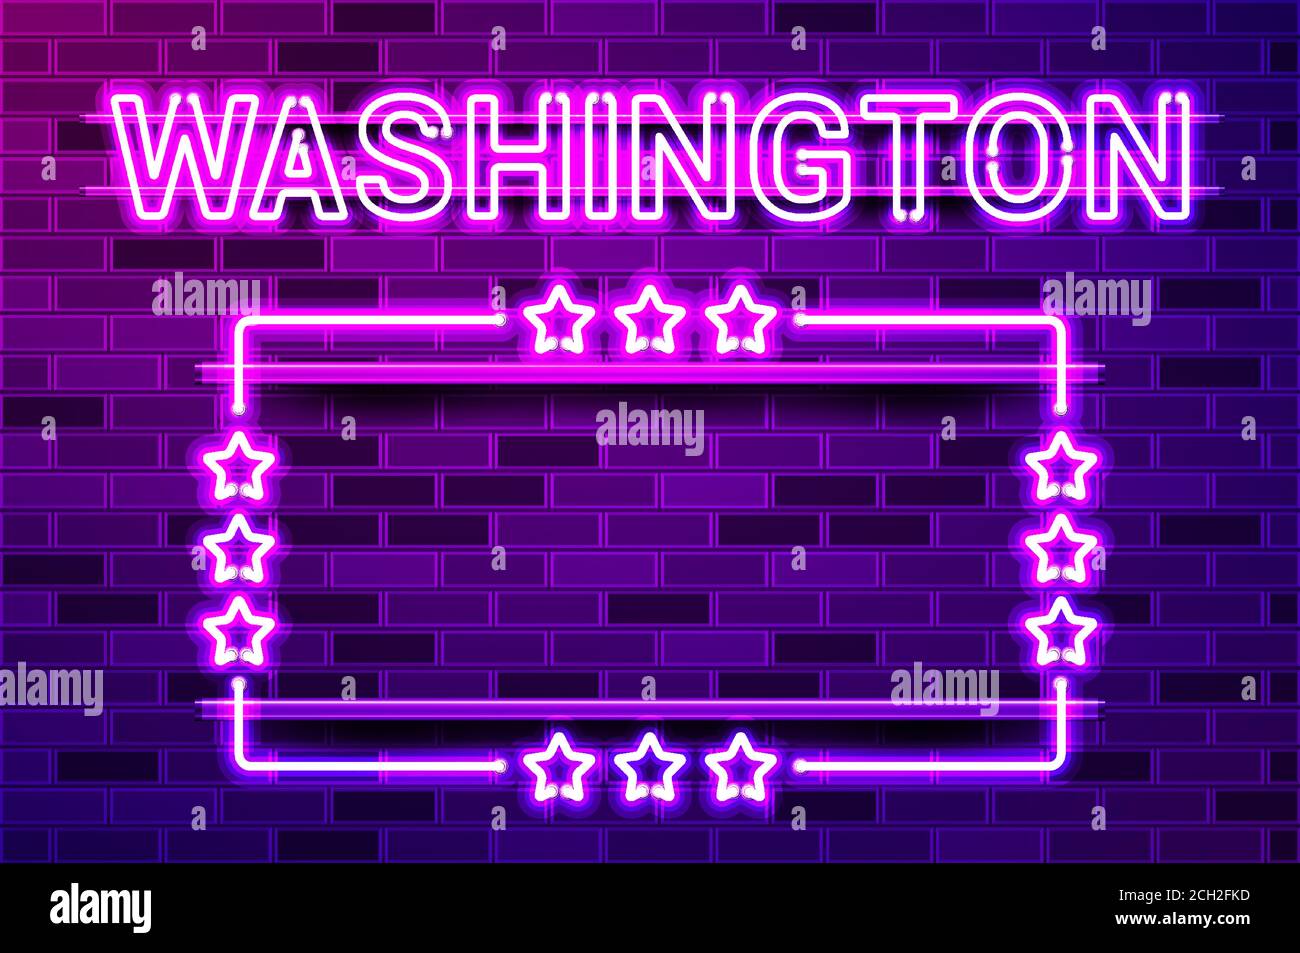 Washington US State lettrage violet fluo lumineux et un cadre rectangulaire avec des étoiles. Illustration vectorielle réaliste. Mur de briques violets, violet phosphorescent, m Illustration de Vecteur